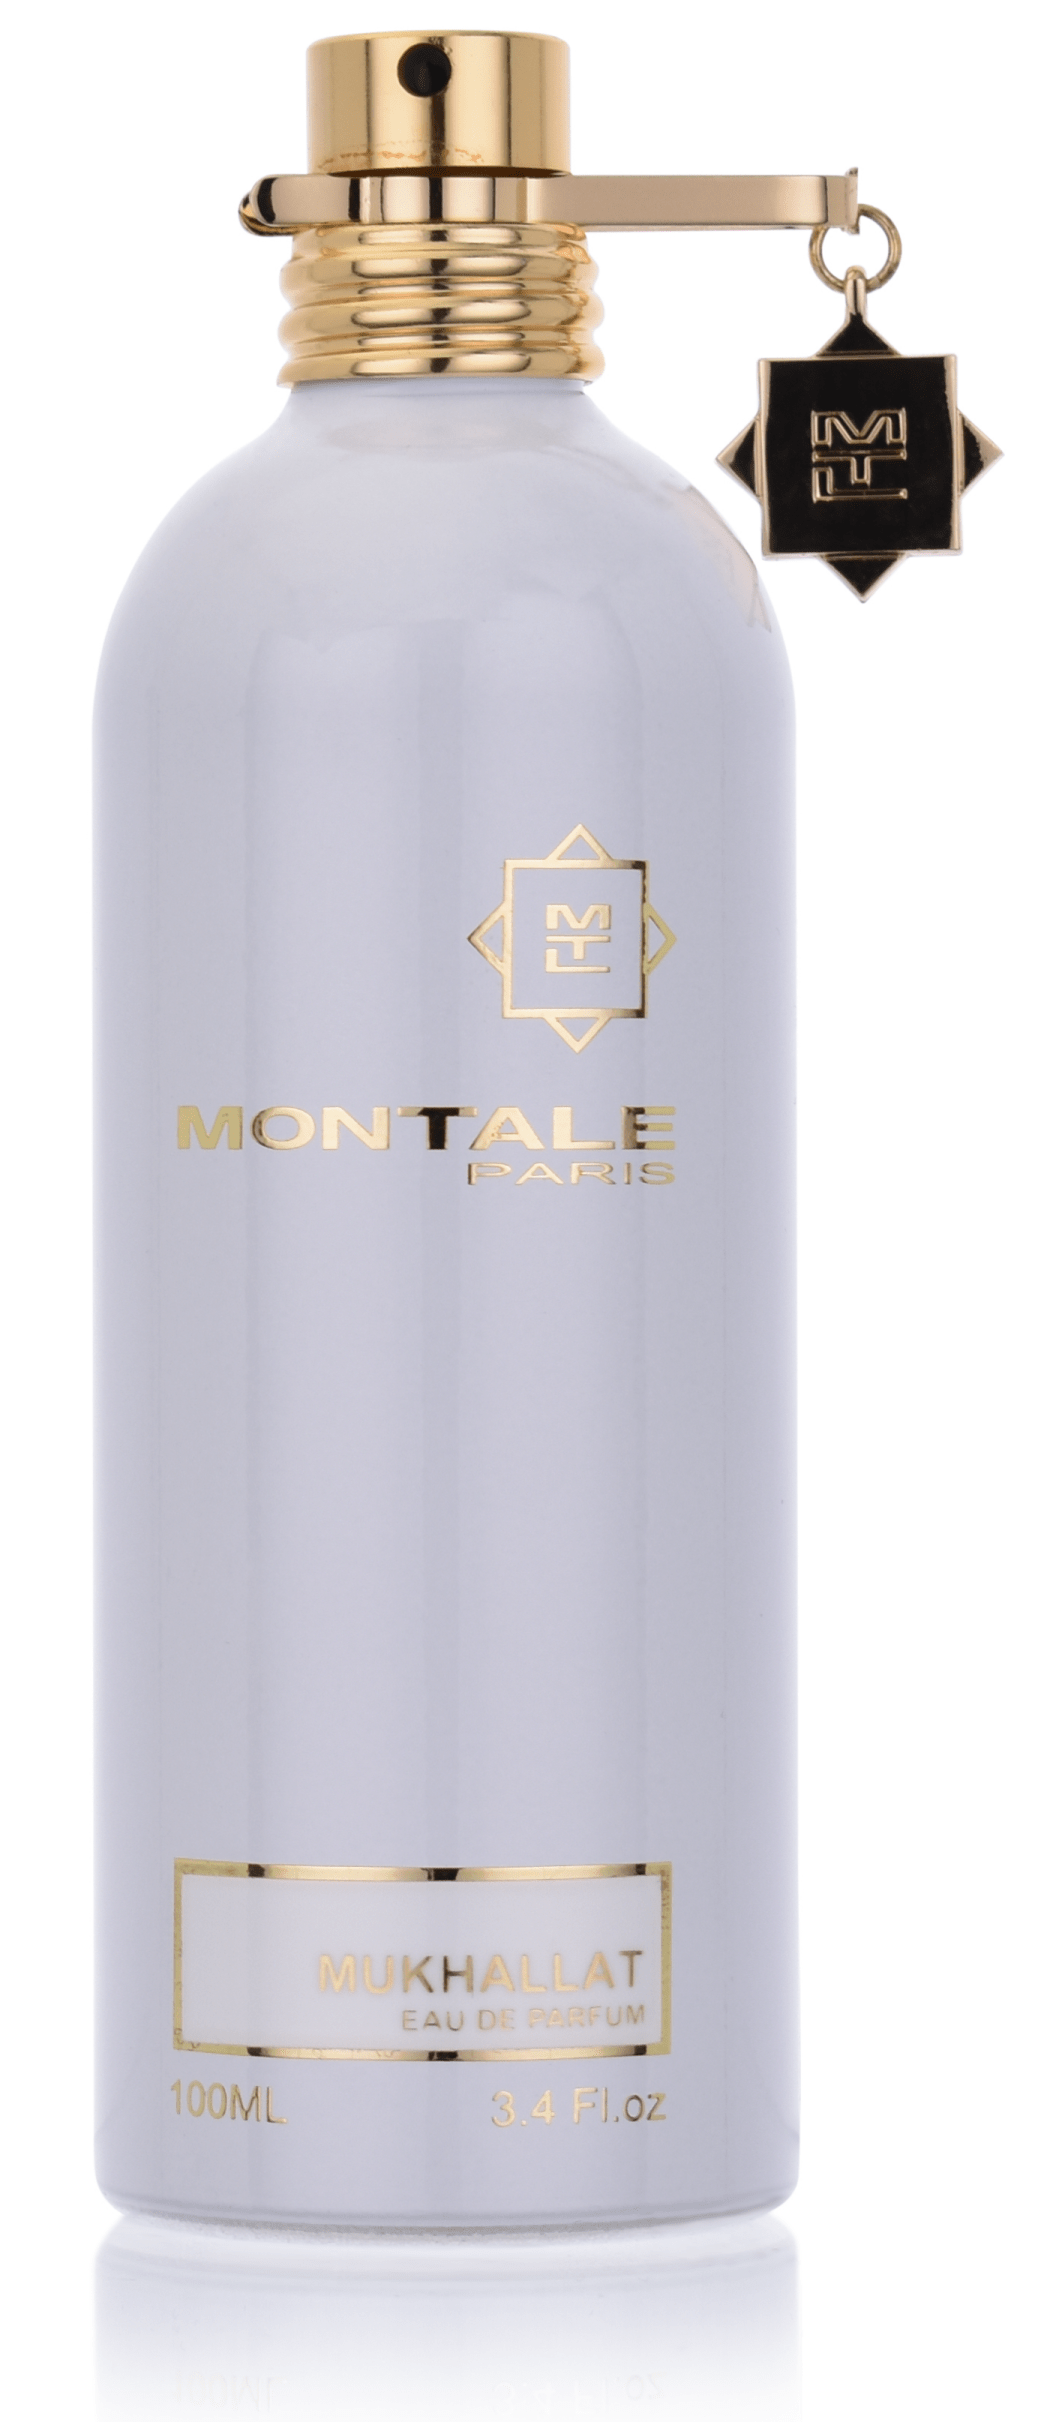 Montale Paris Montale Paris Mukhallat 100 ml Eau de Parfum 